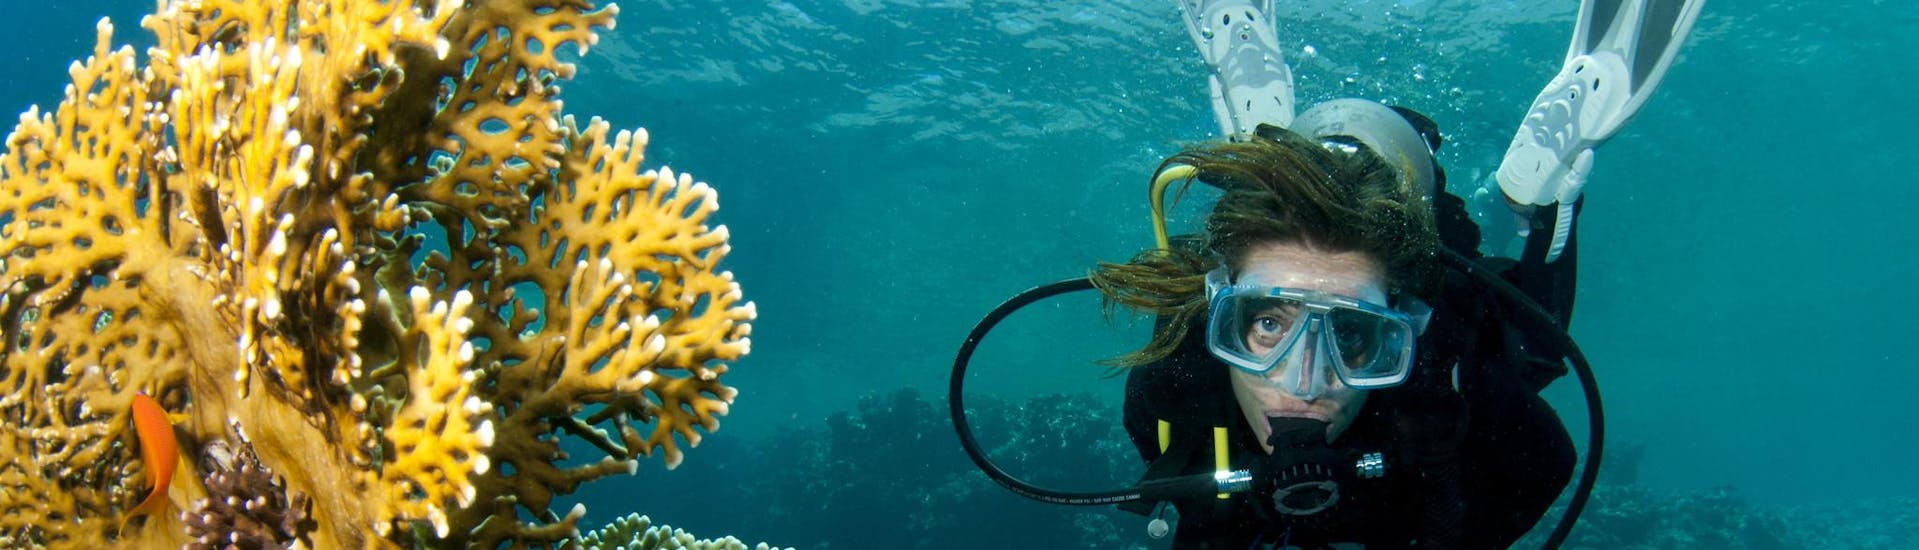 Une femme s'amusant lors d'une activité de plongée sous-marine dans les récifs et les coraux.